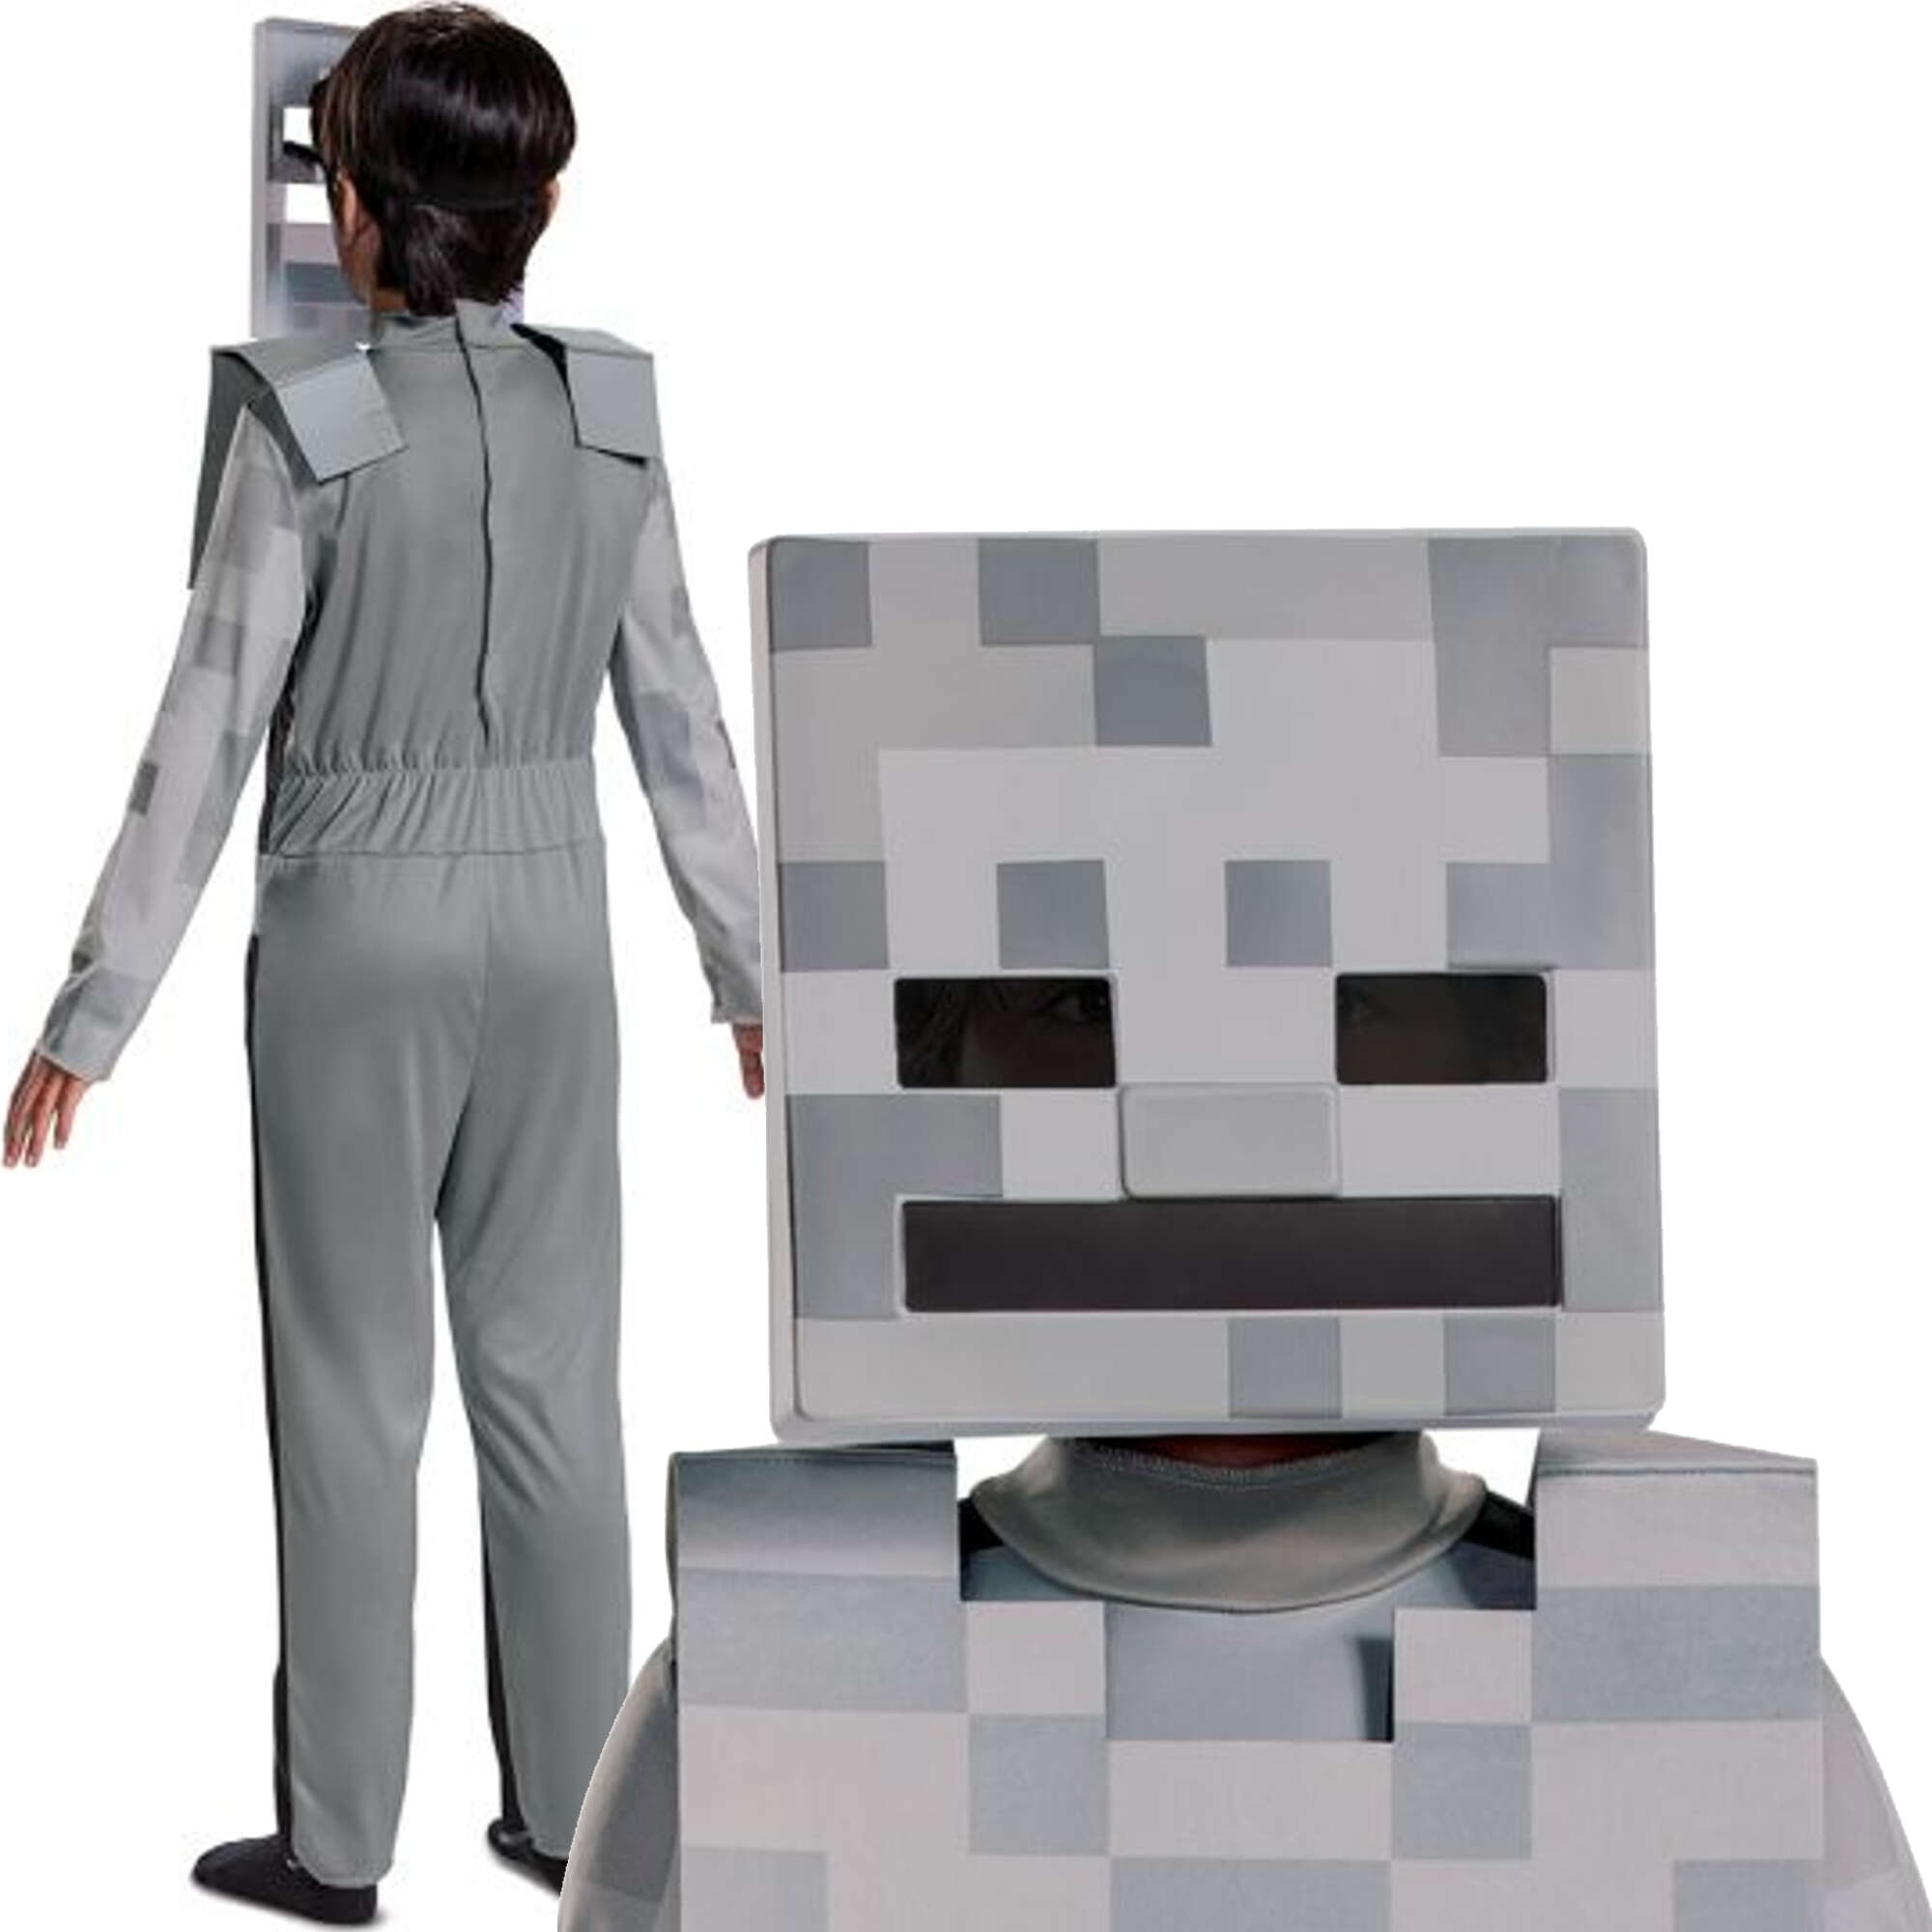 Minecraft strj karnawaowy dla chopca Skeleton Biay Szkielet kostium przebranie 125-135 cm (7-8 lat)